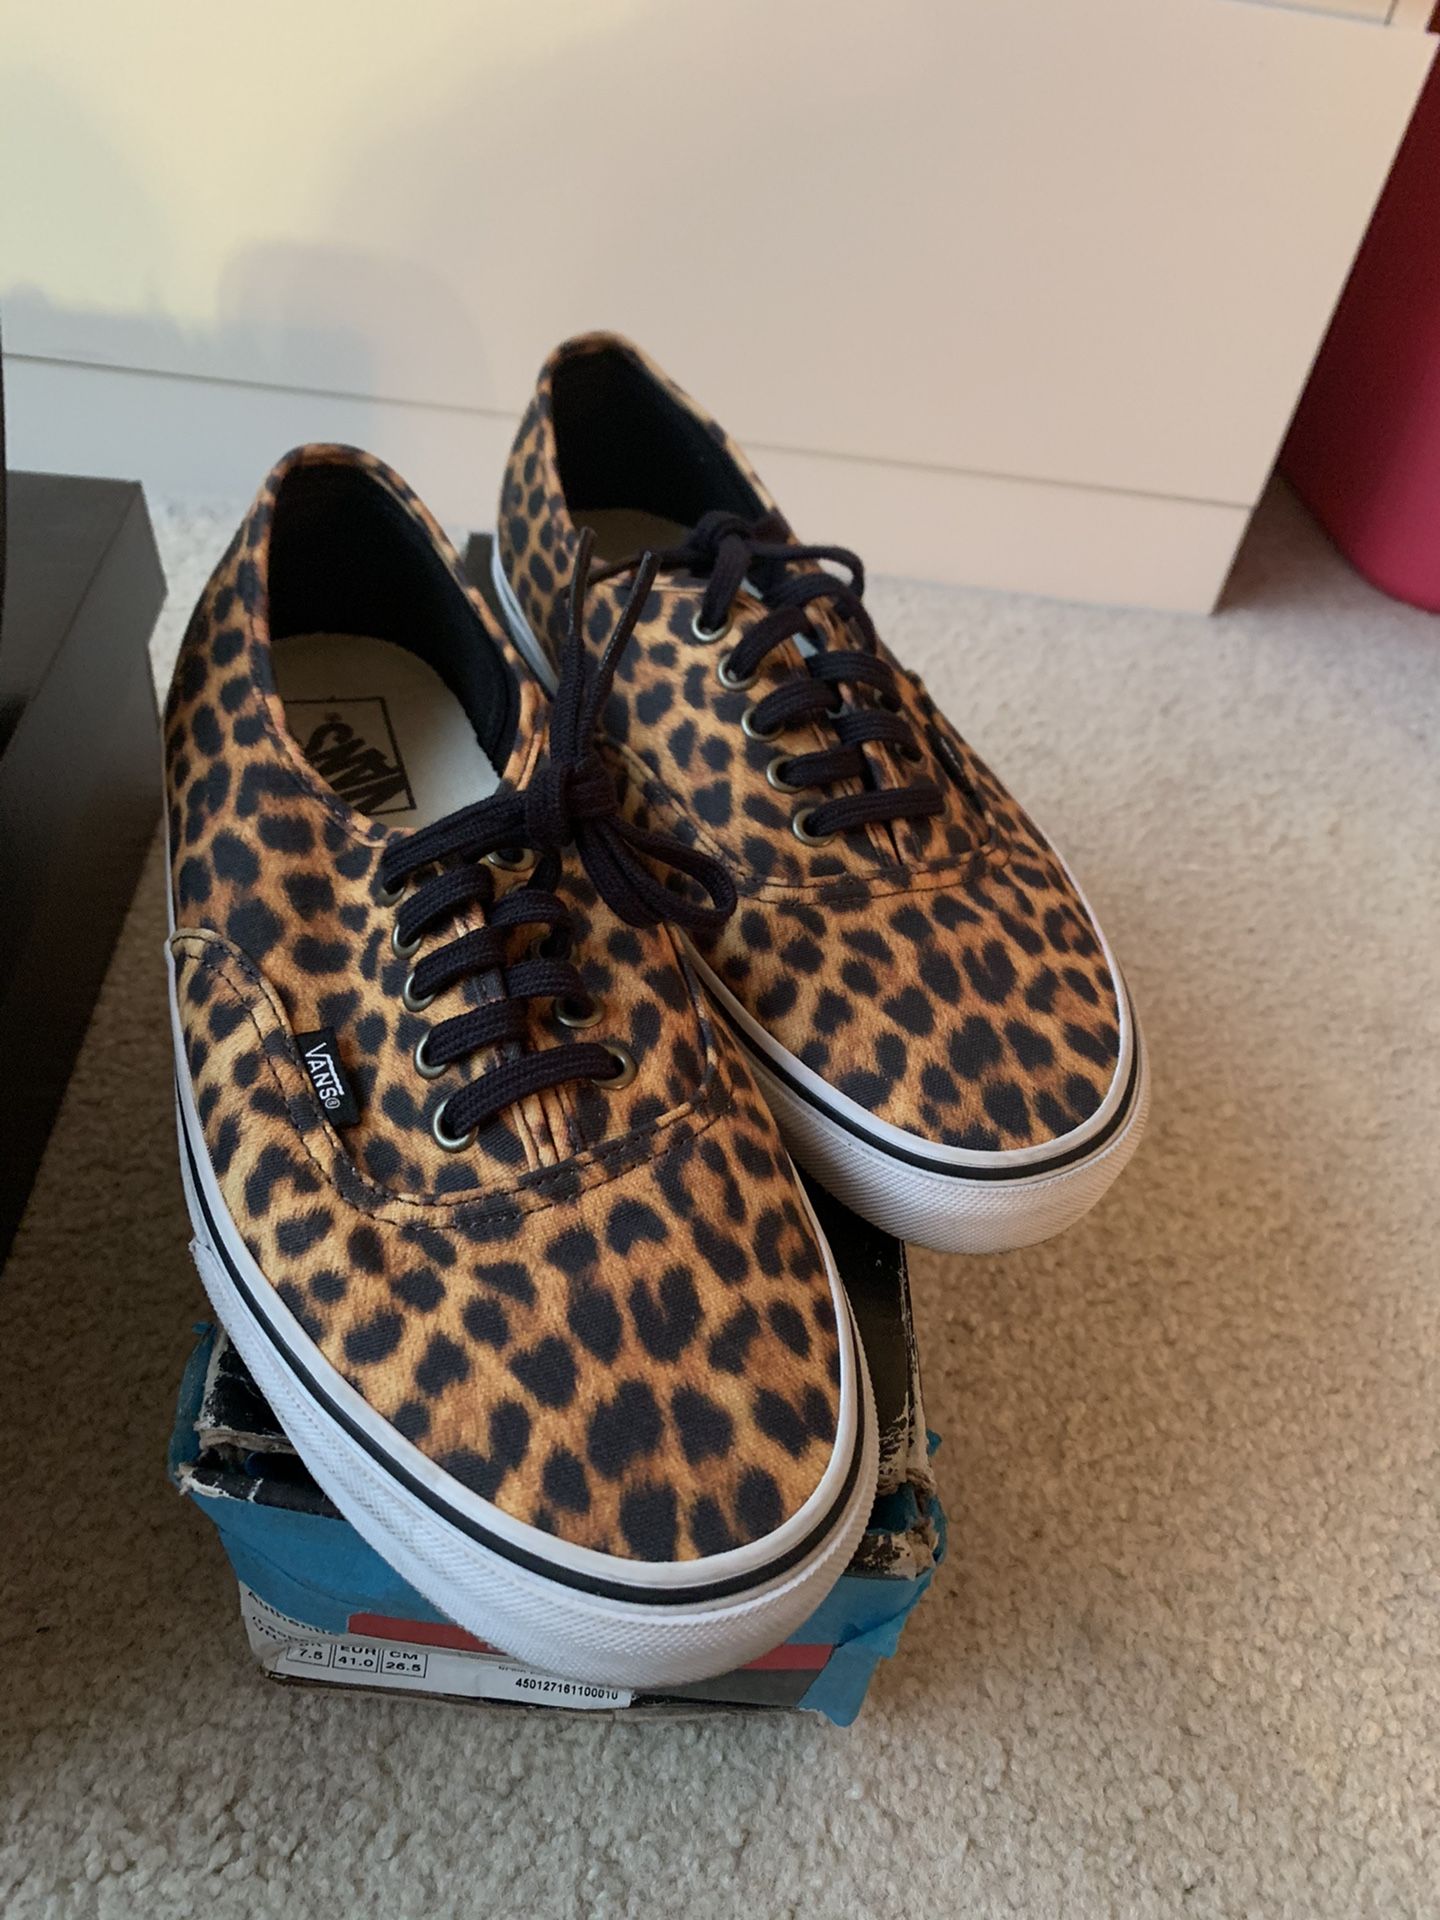 Vans leopard size 8.5